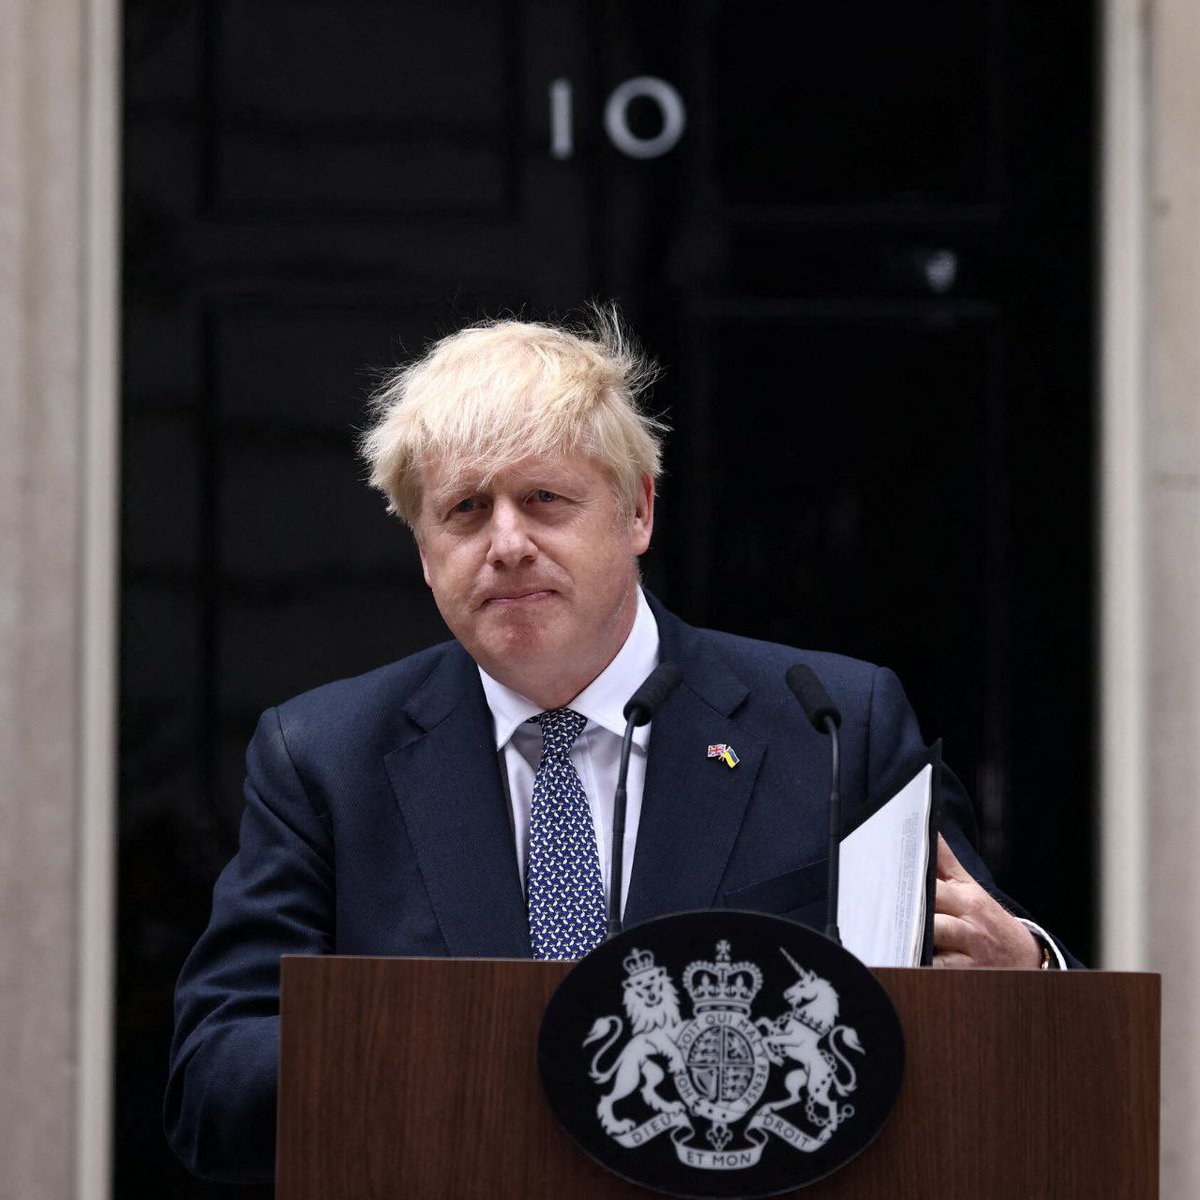 İngiltere’de oy kullanırken kimlik zorunluluğu getiren eski başbakan Boris Johnson, kimliğini unuttuğu için oy kullanamadı.